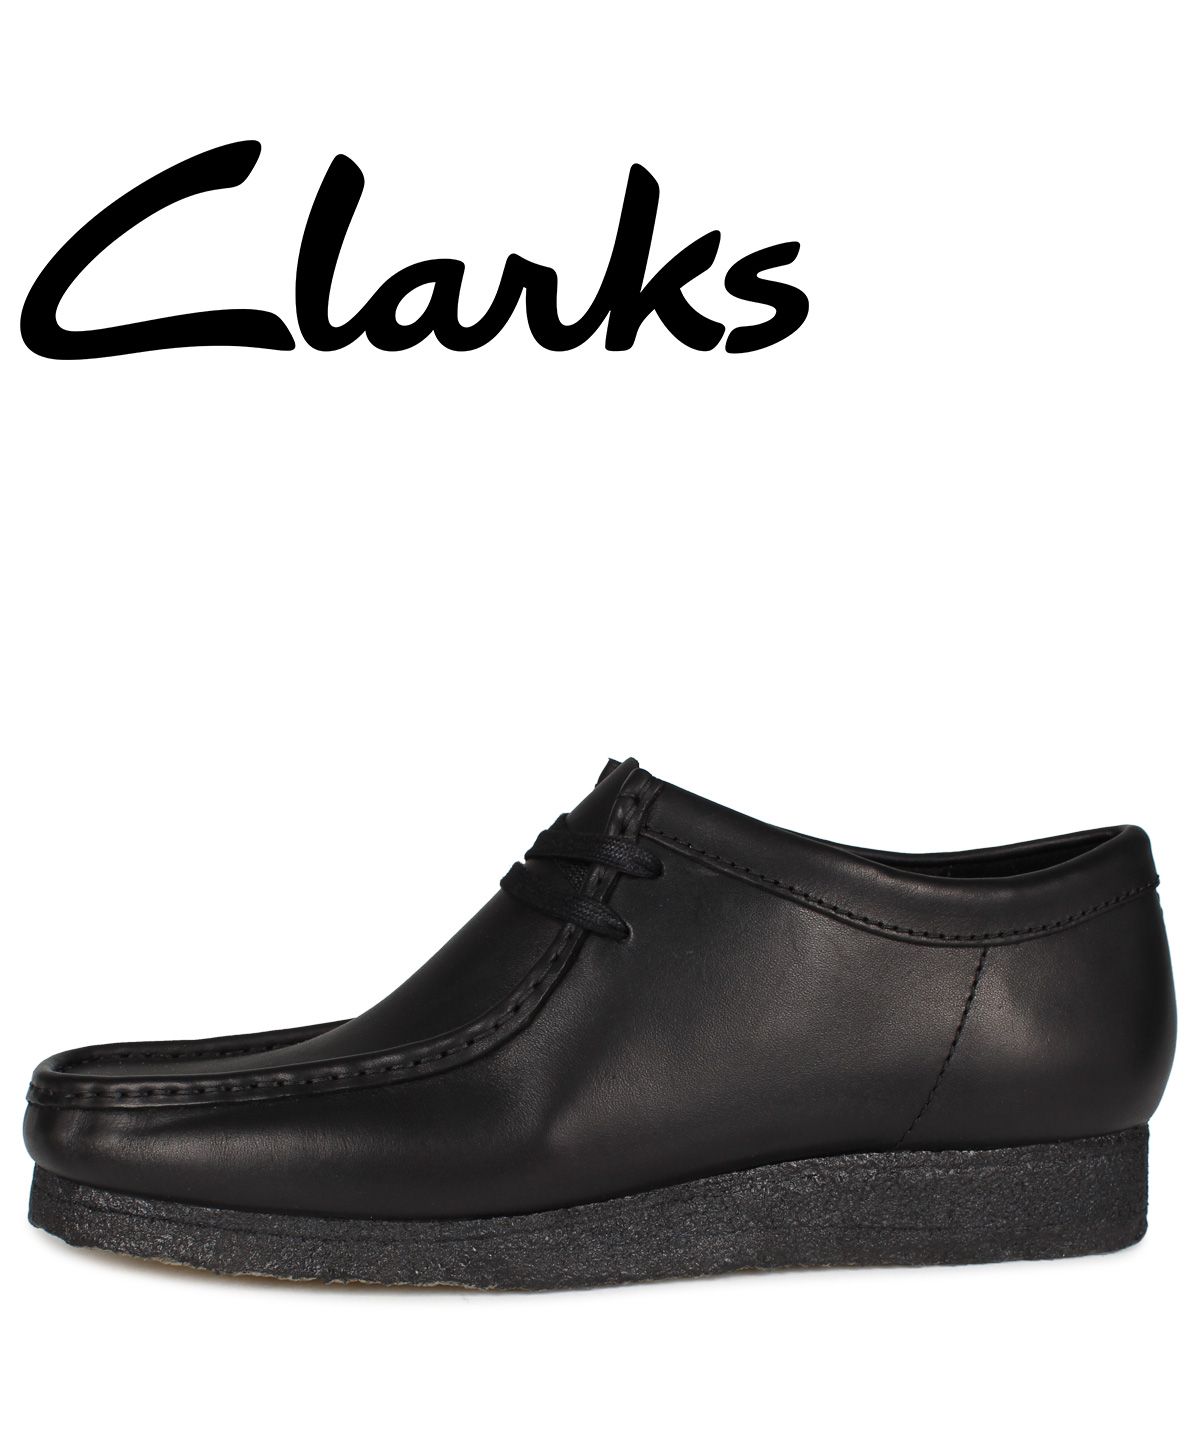 クラークス CLARKS ワラビーブーツ メンズ WALLABEE BOOT ブラック 黒 26155514